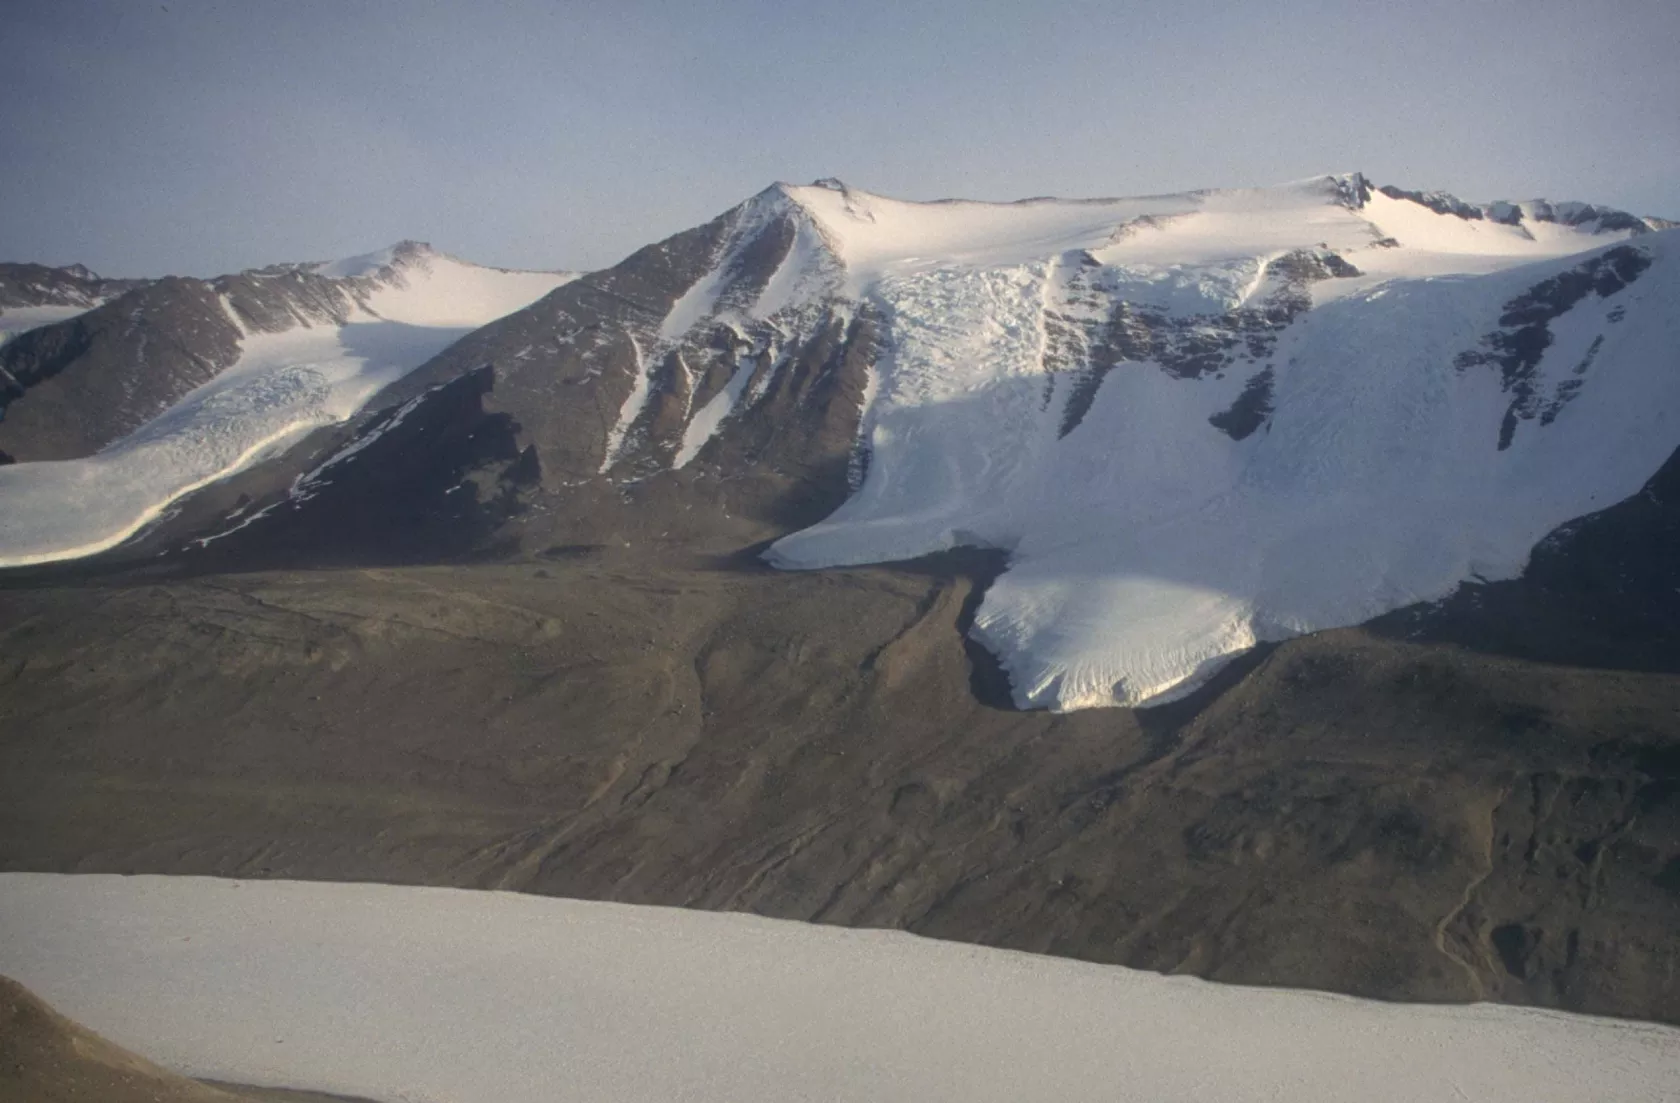 Un dron autónomo de próxima generación revelará secretos ocultos de la Antártida